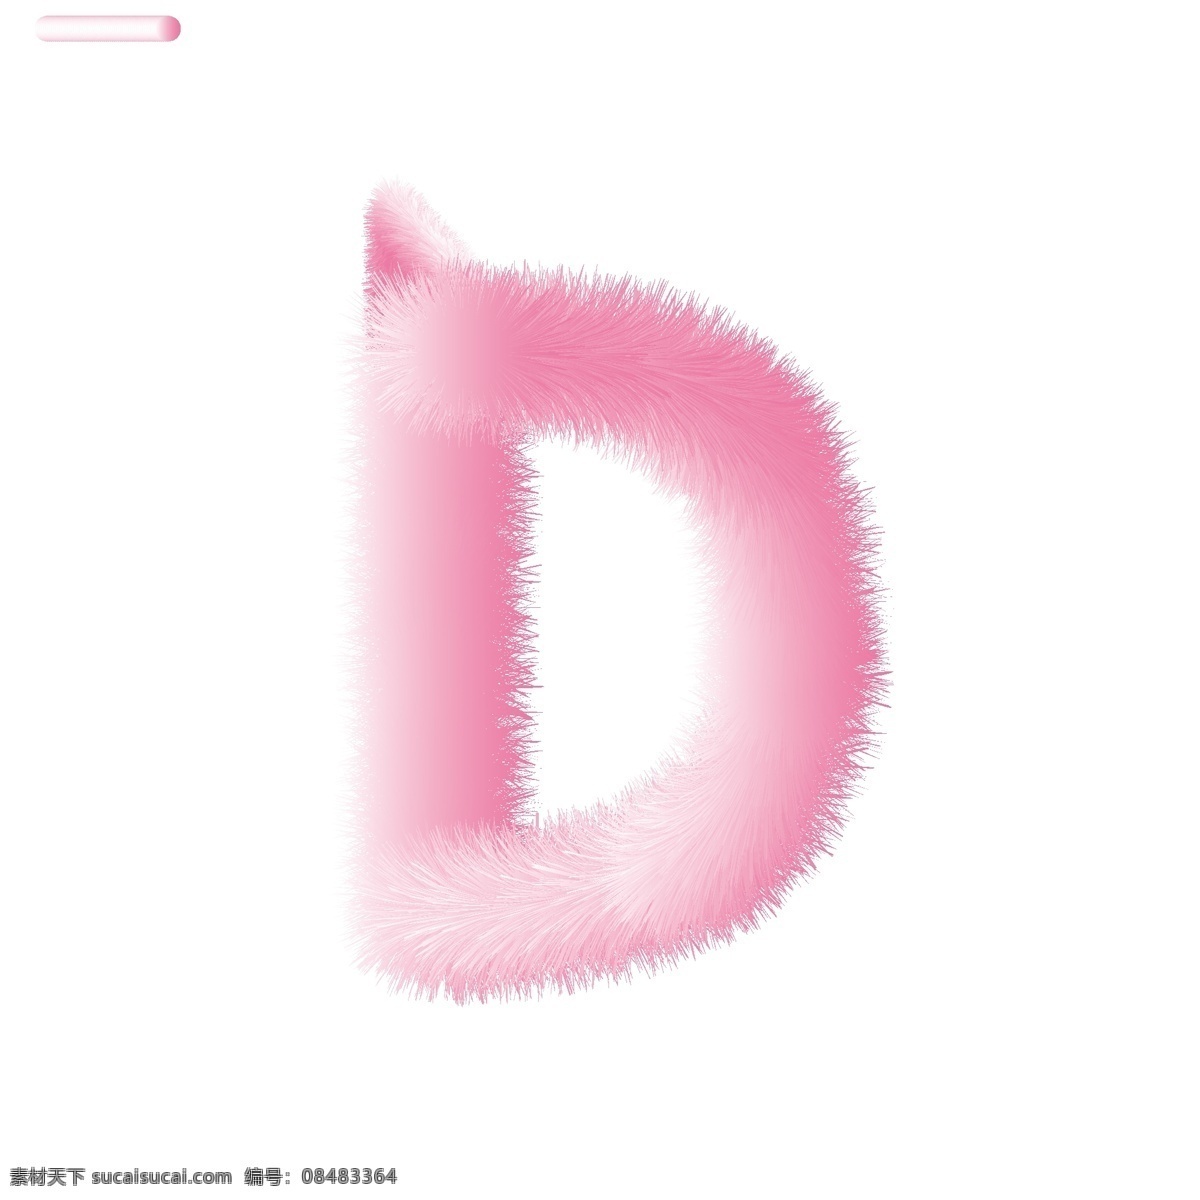 毛茸茸 字母 d 字体 元素 字 艺术字 粉色